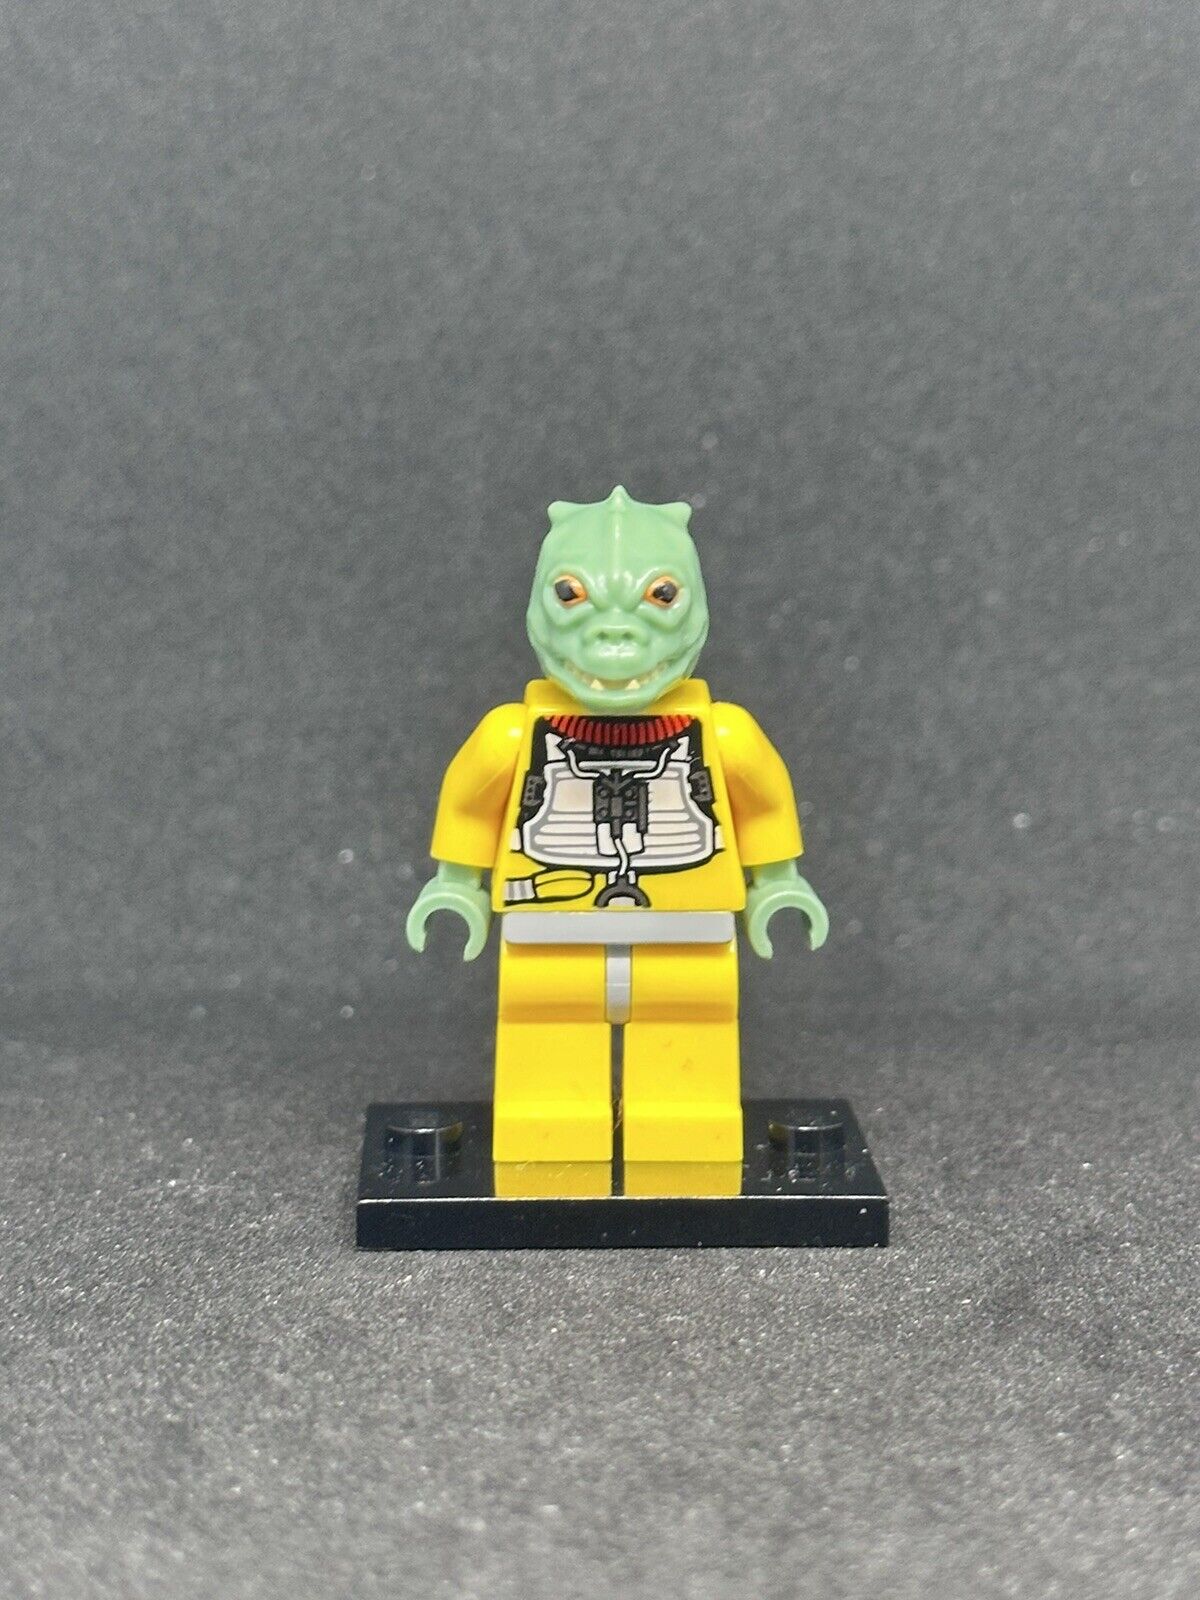 Lego Star Wars Bossk Sand Green 10221 8097 Slave 1 Super Star Destroyer Rare